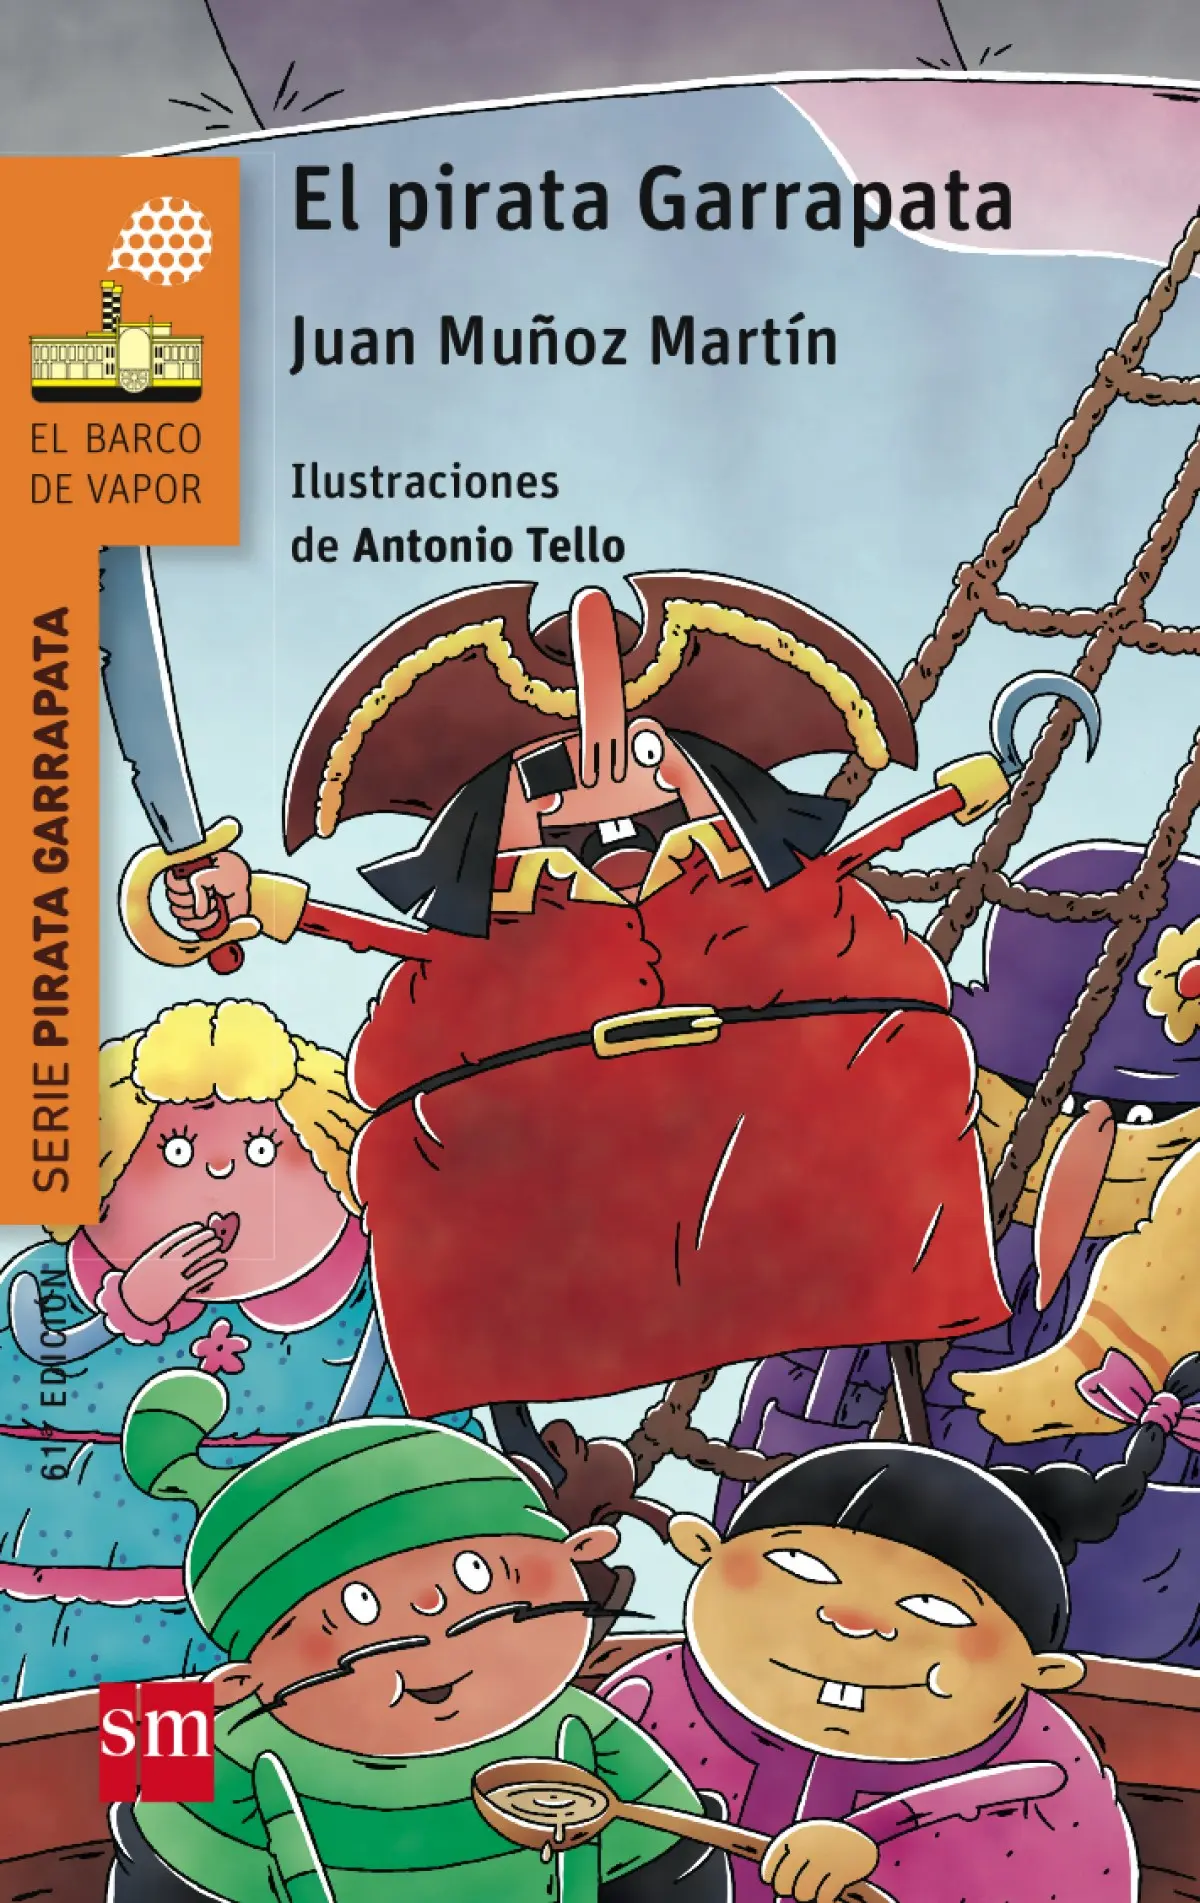 el pirata garrapata en el museo del prado - Cuántas páginas tiene el libro El pirata garrapata